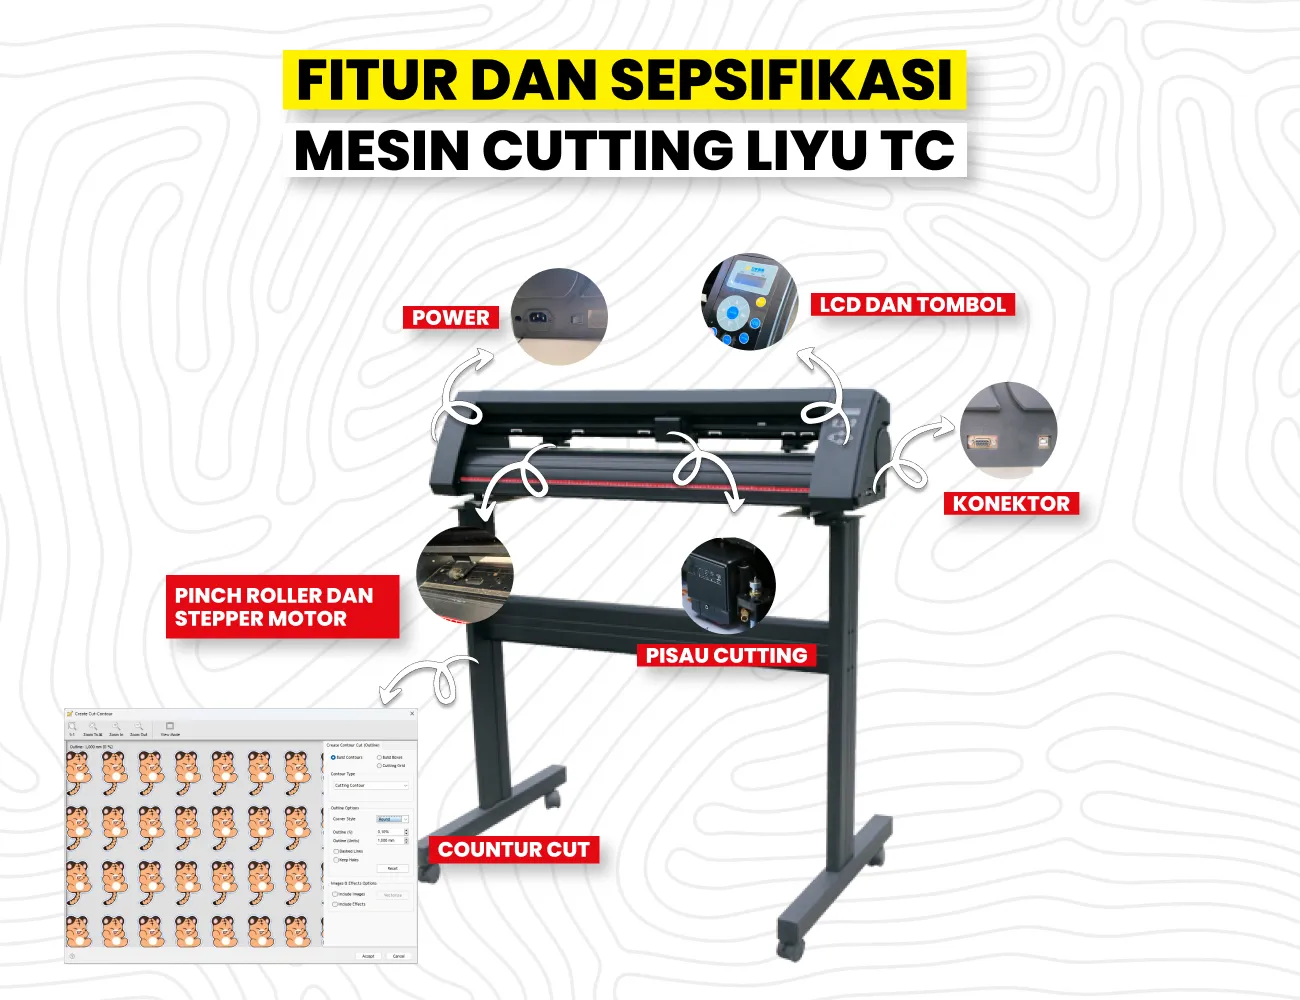 Fitur Contour Cut Dan Spesifikasi Teknis Mesin Cutting Sticker Liyu Tc Untuk Efisiensi Produksi.